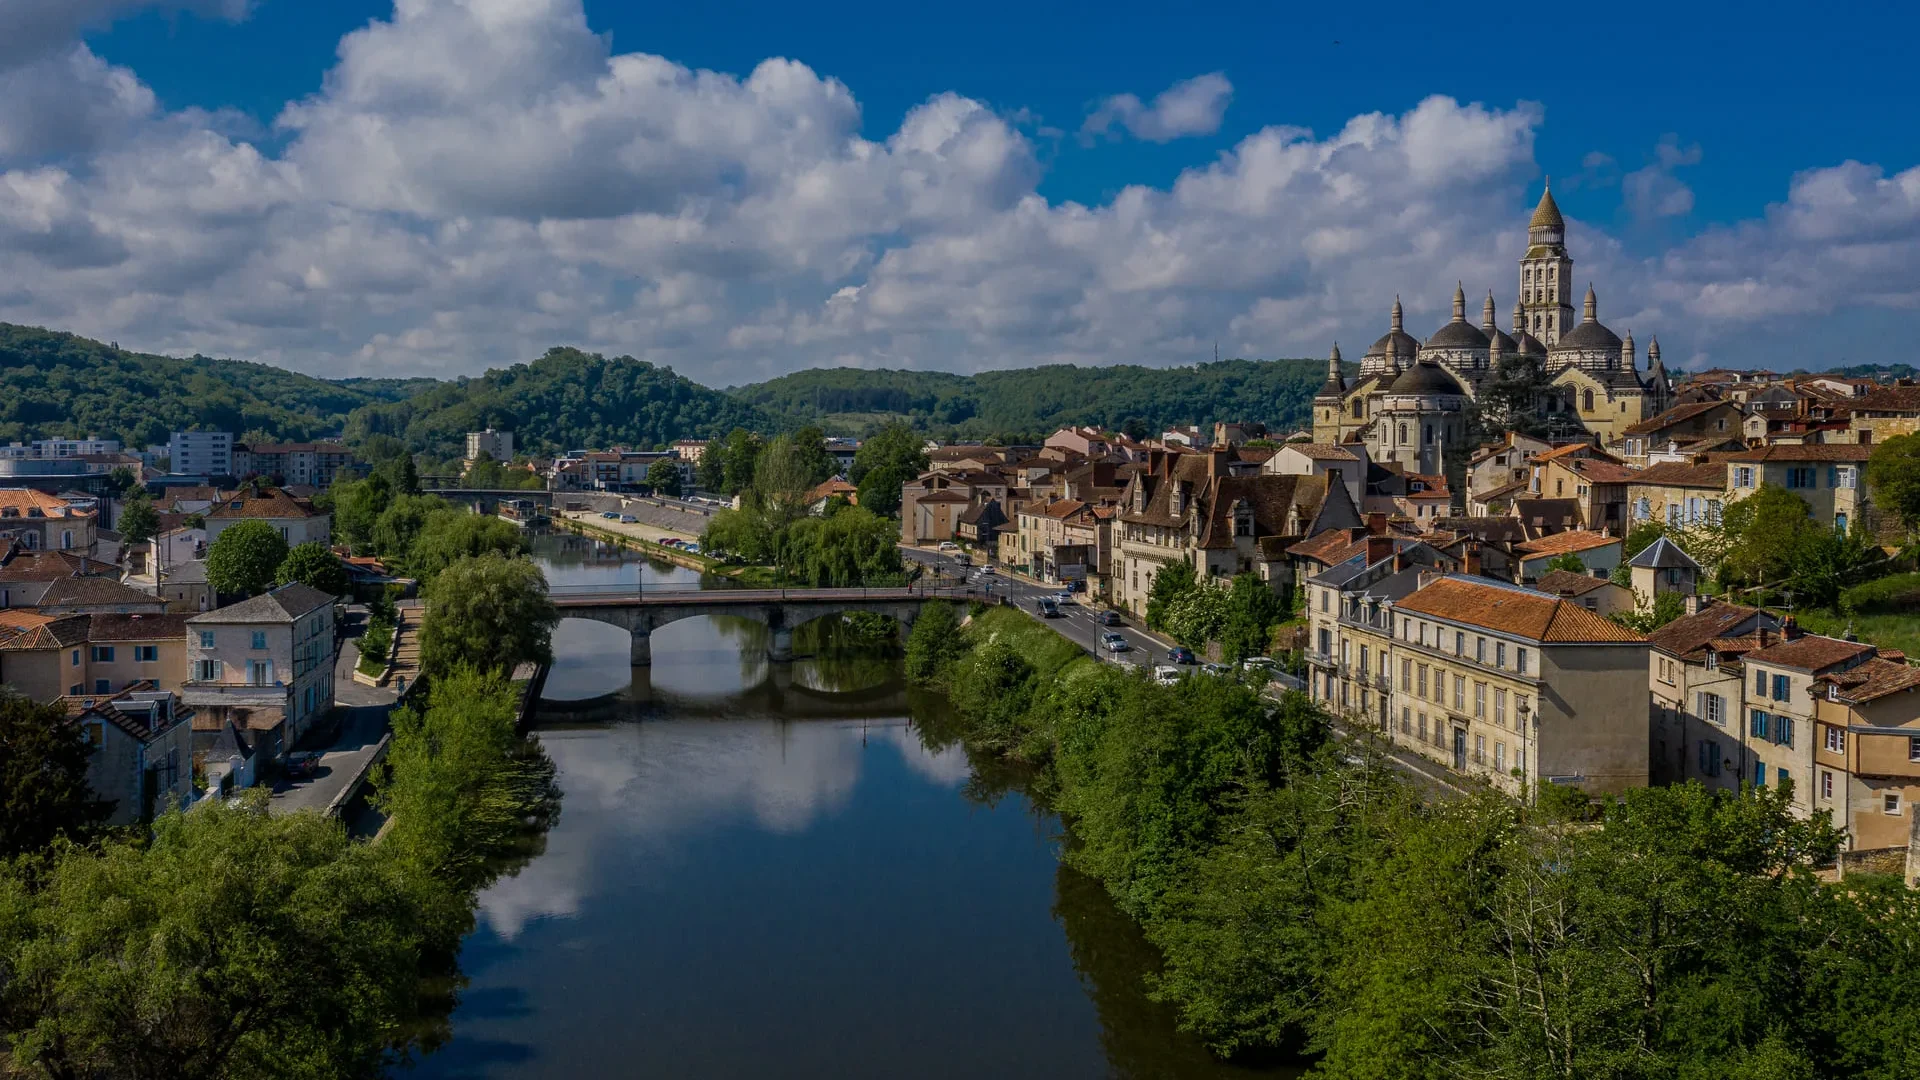 Blick auf Périgueux vom Fluss aus ©Déclic_Décolle